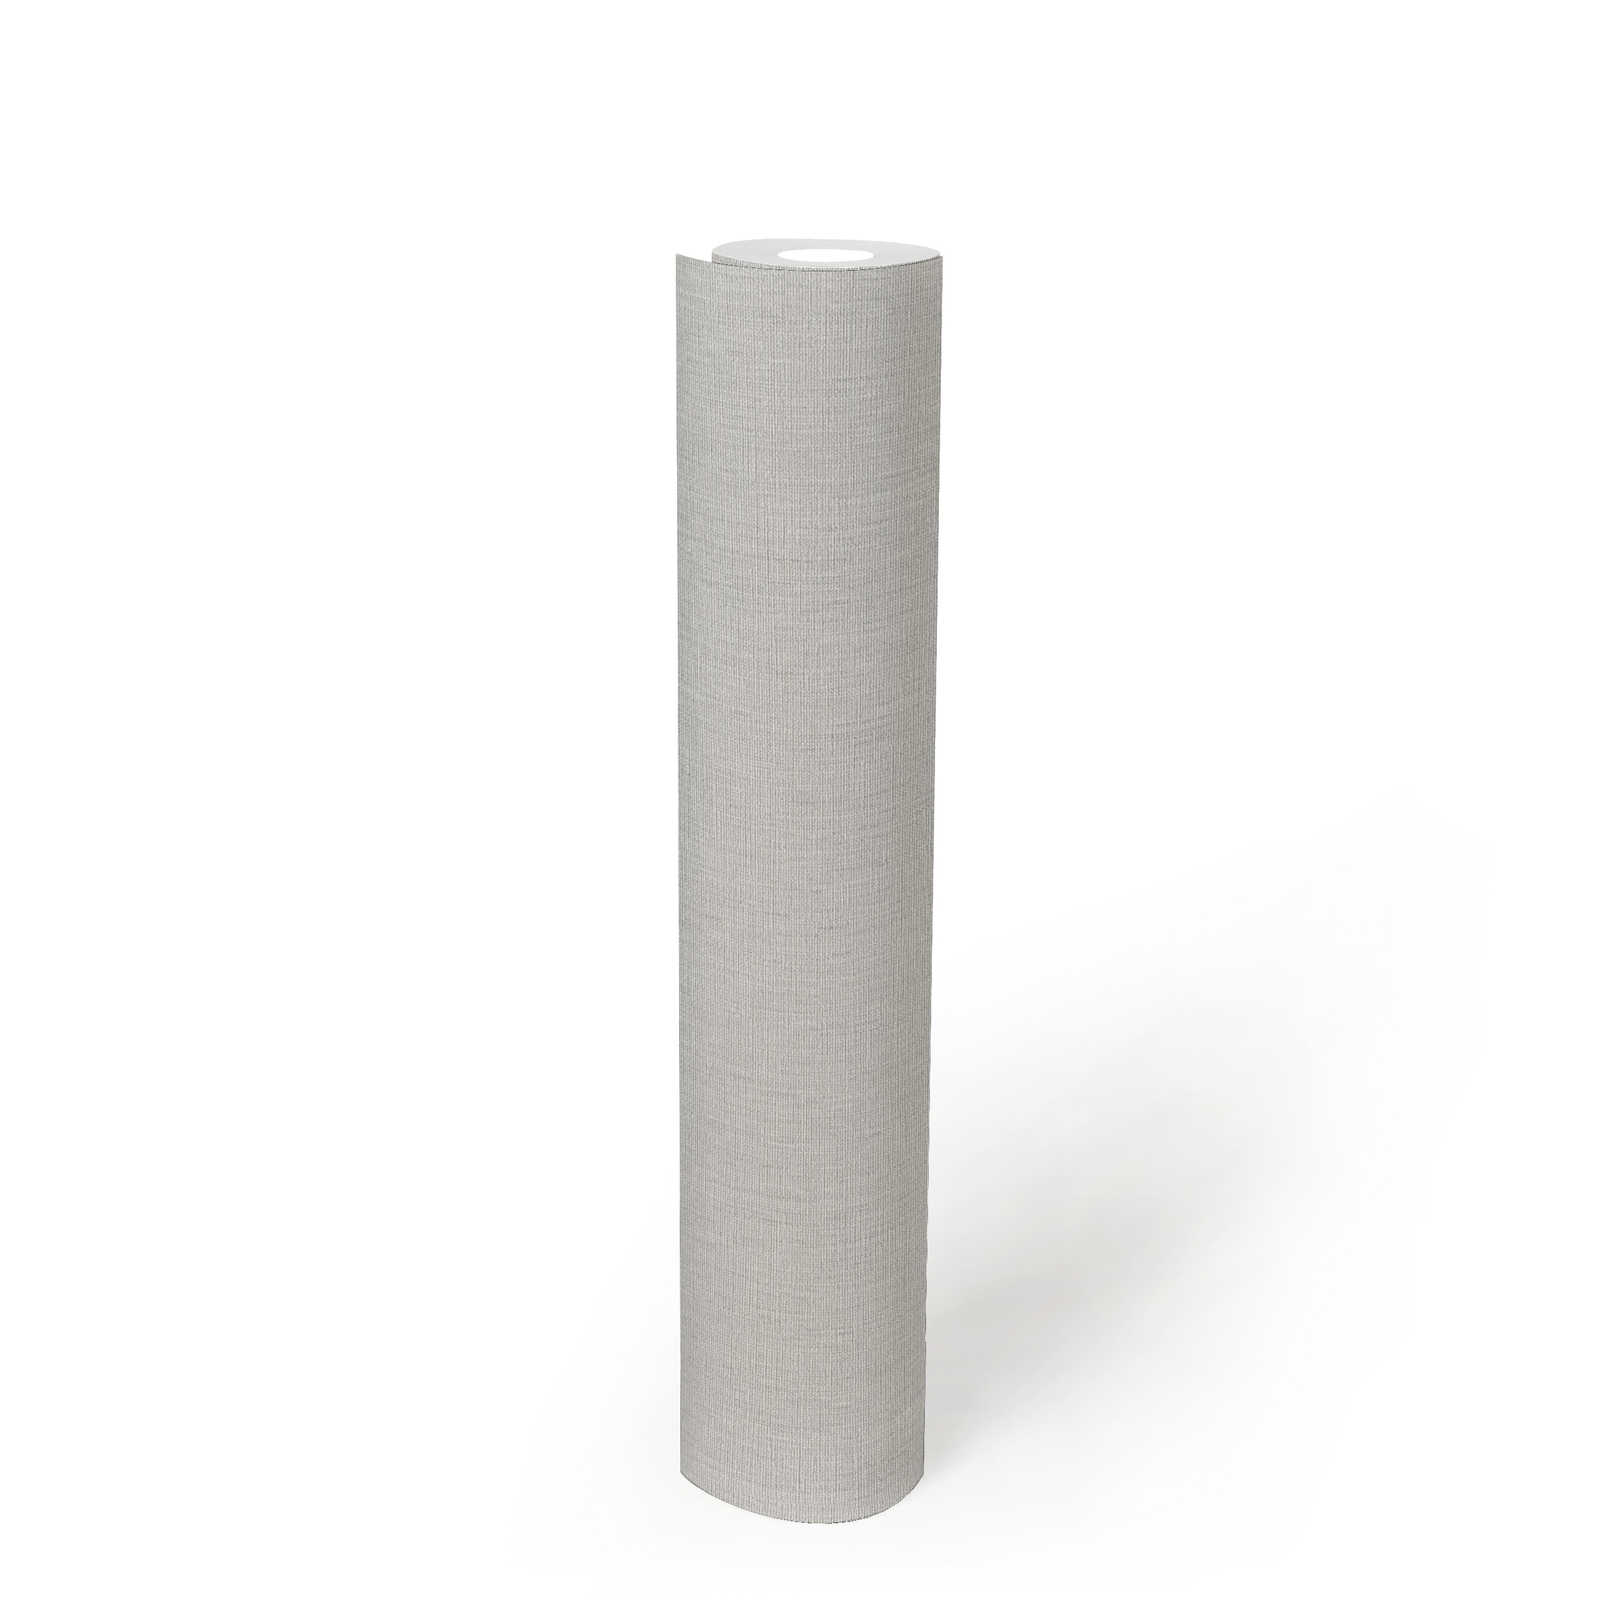             Papel pintado unitario con aspecto textil y estructura en aspecto mate - gris, gris claro
        